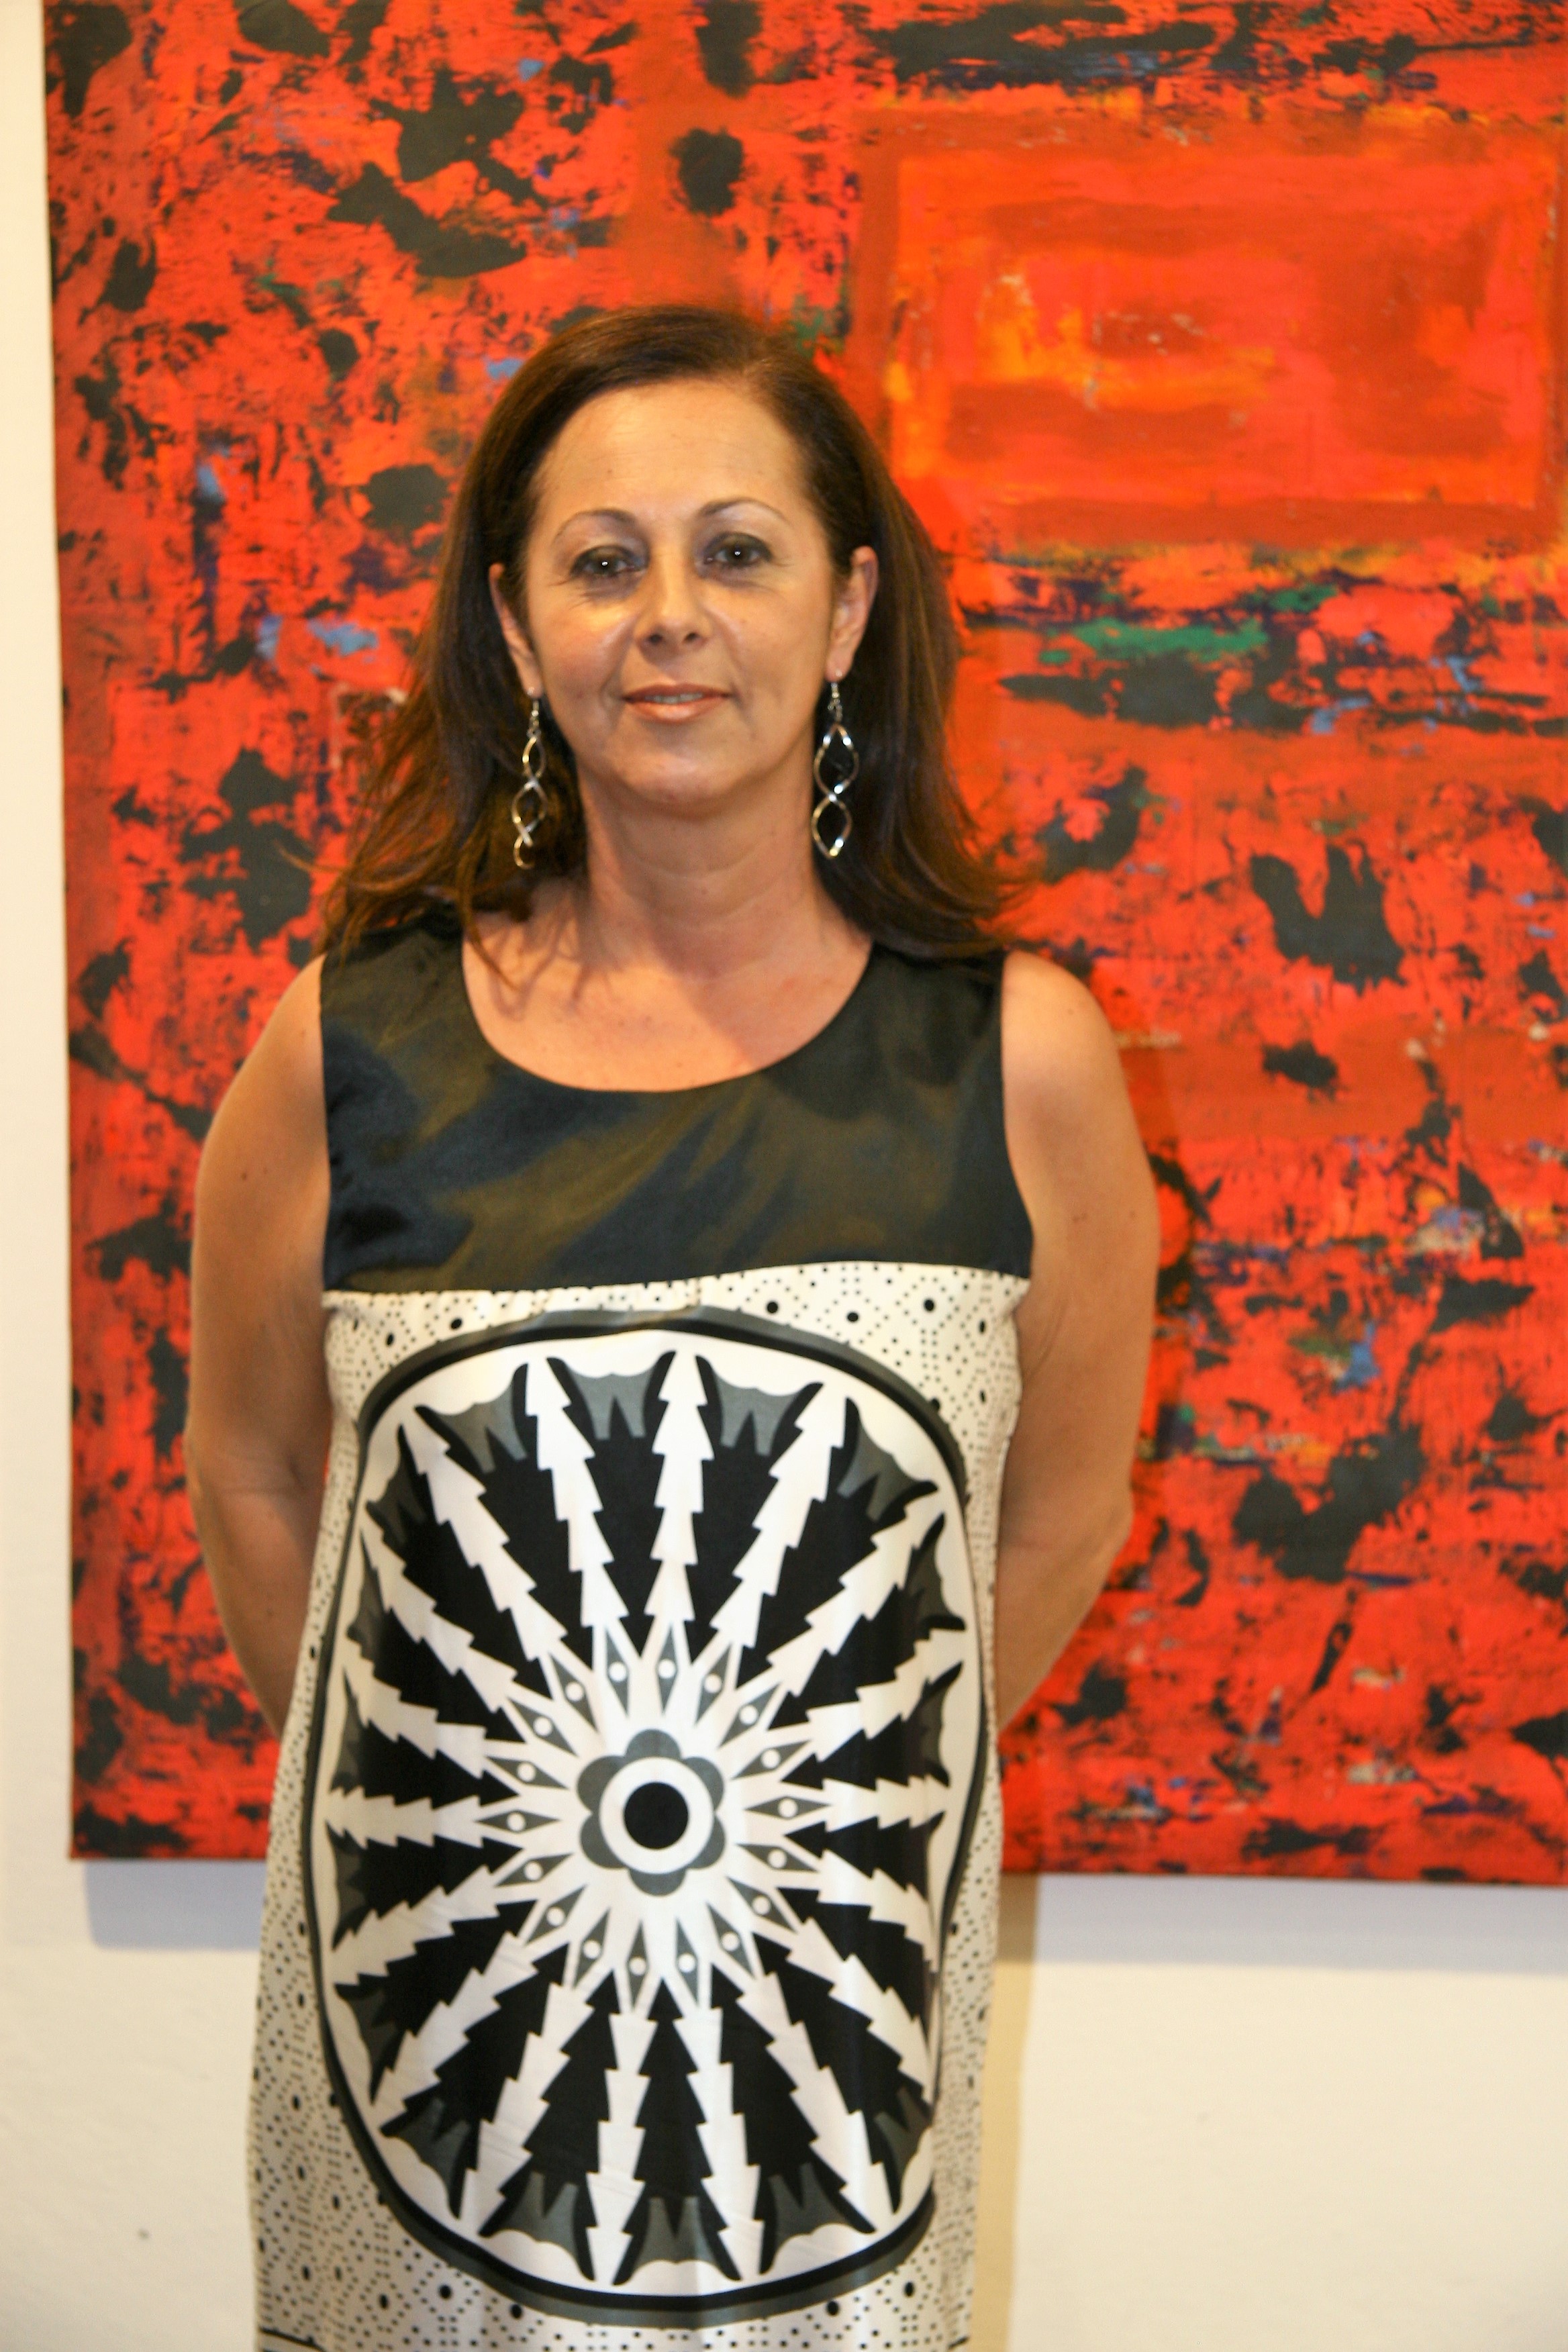 تحت رعاية صاحبة السمو الملكي الأميرة رحمة بنت الحسن ذا كورنر The Corner ضمن مشروع كامبل غراي ليڤينغ عمّان يستضيف أول معرض منفرد للفنانة التشكيلية البرازيلية إيفانا بانيزي